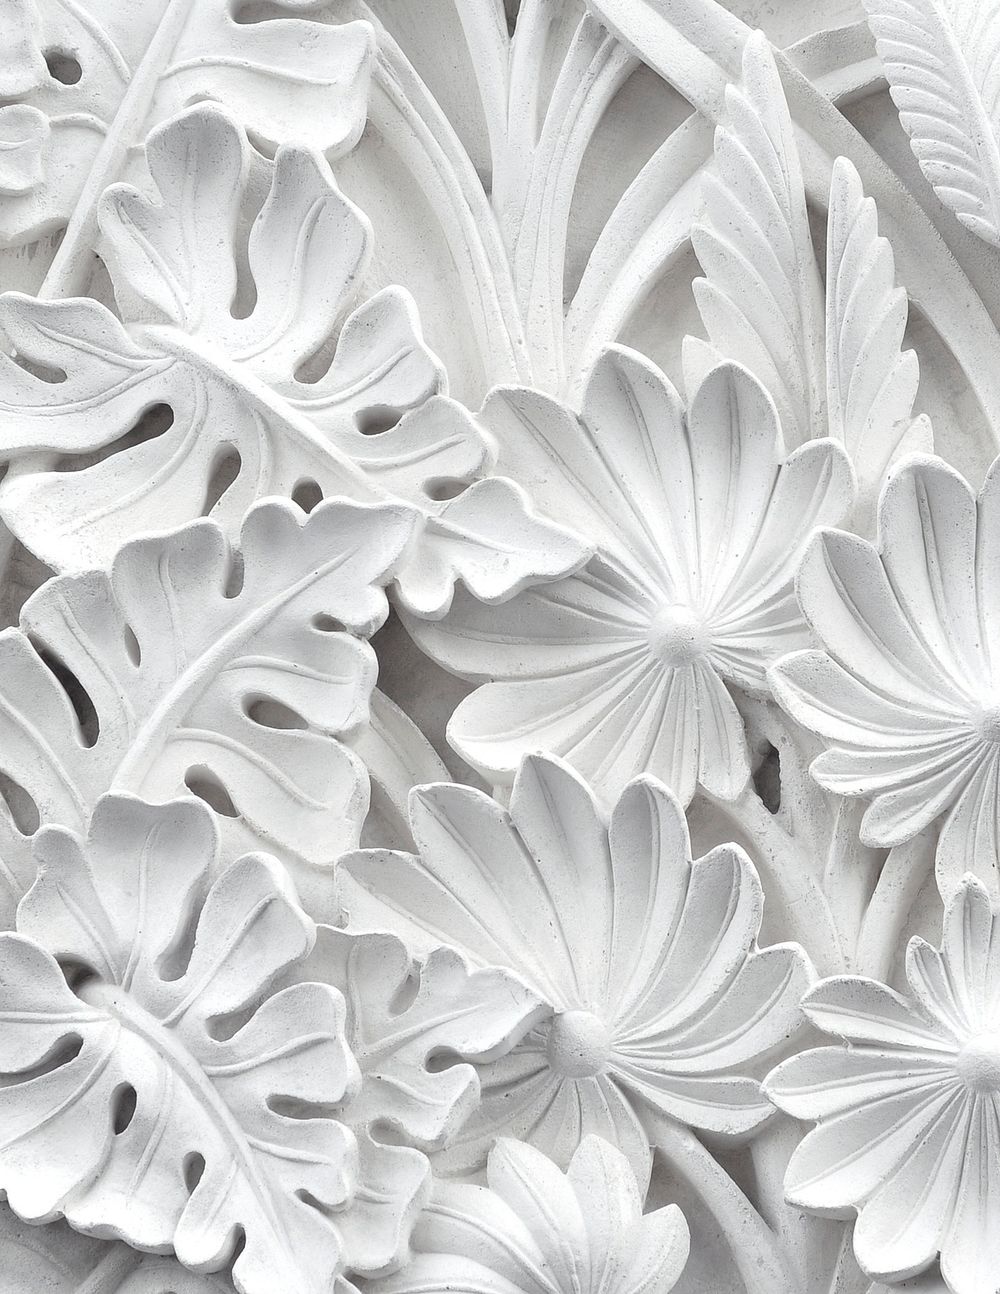 White flower background, carved floral ornament design